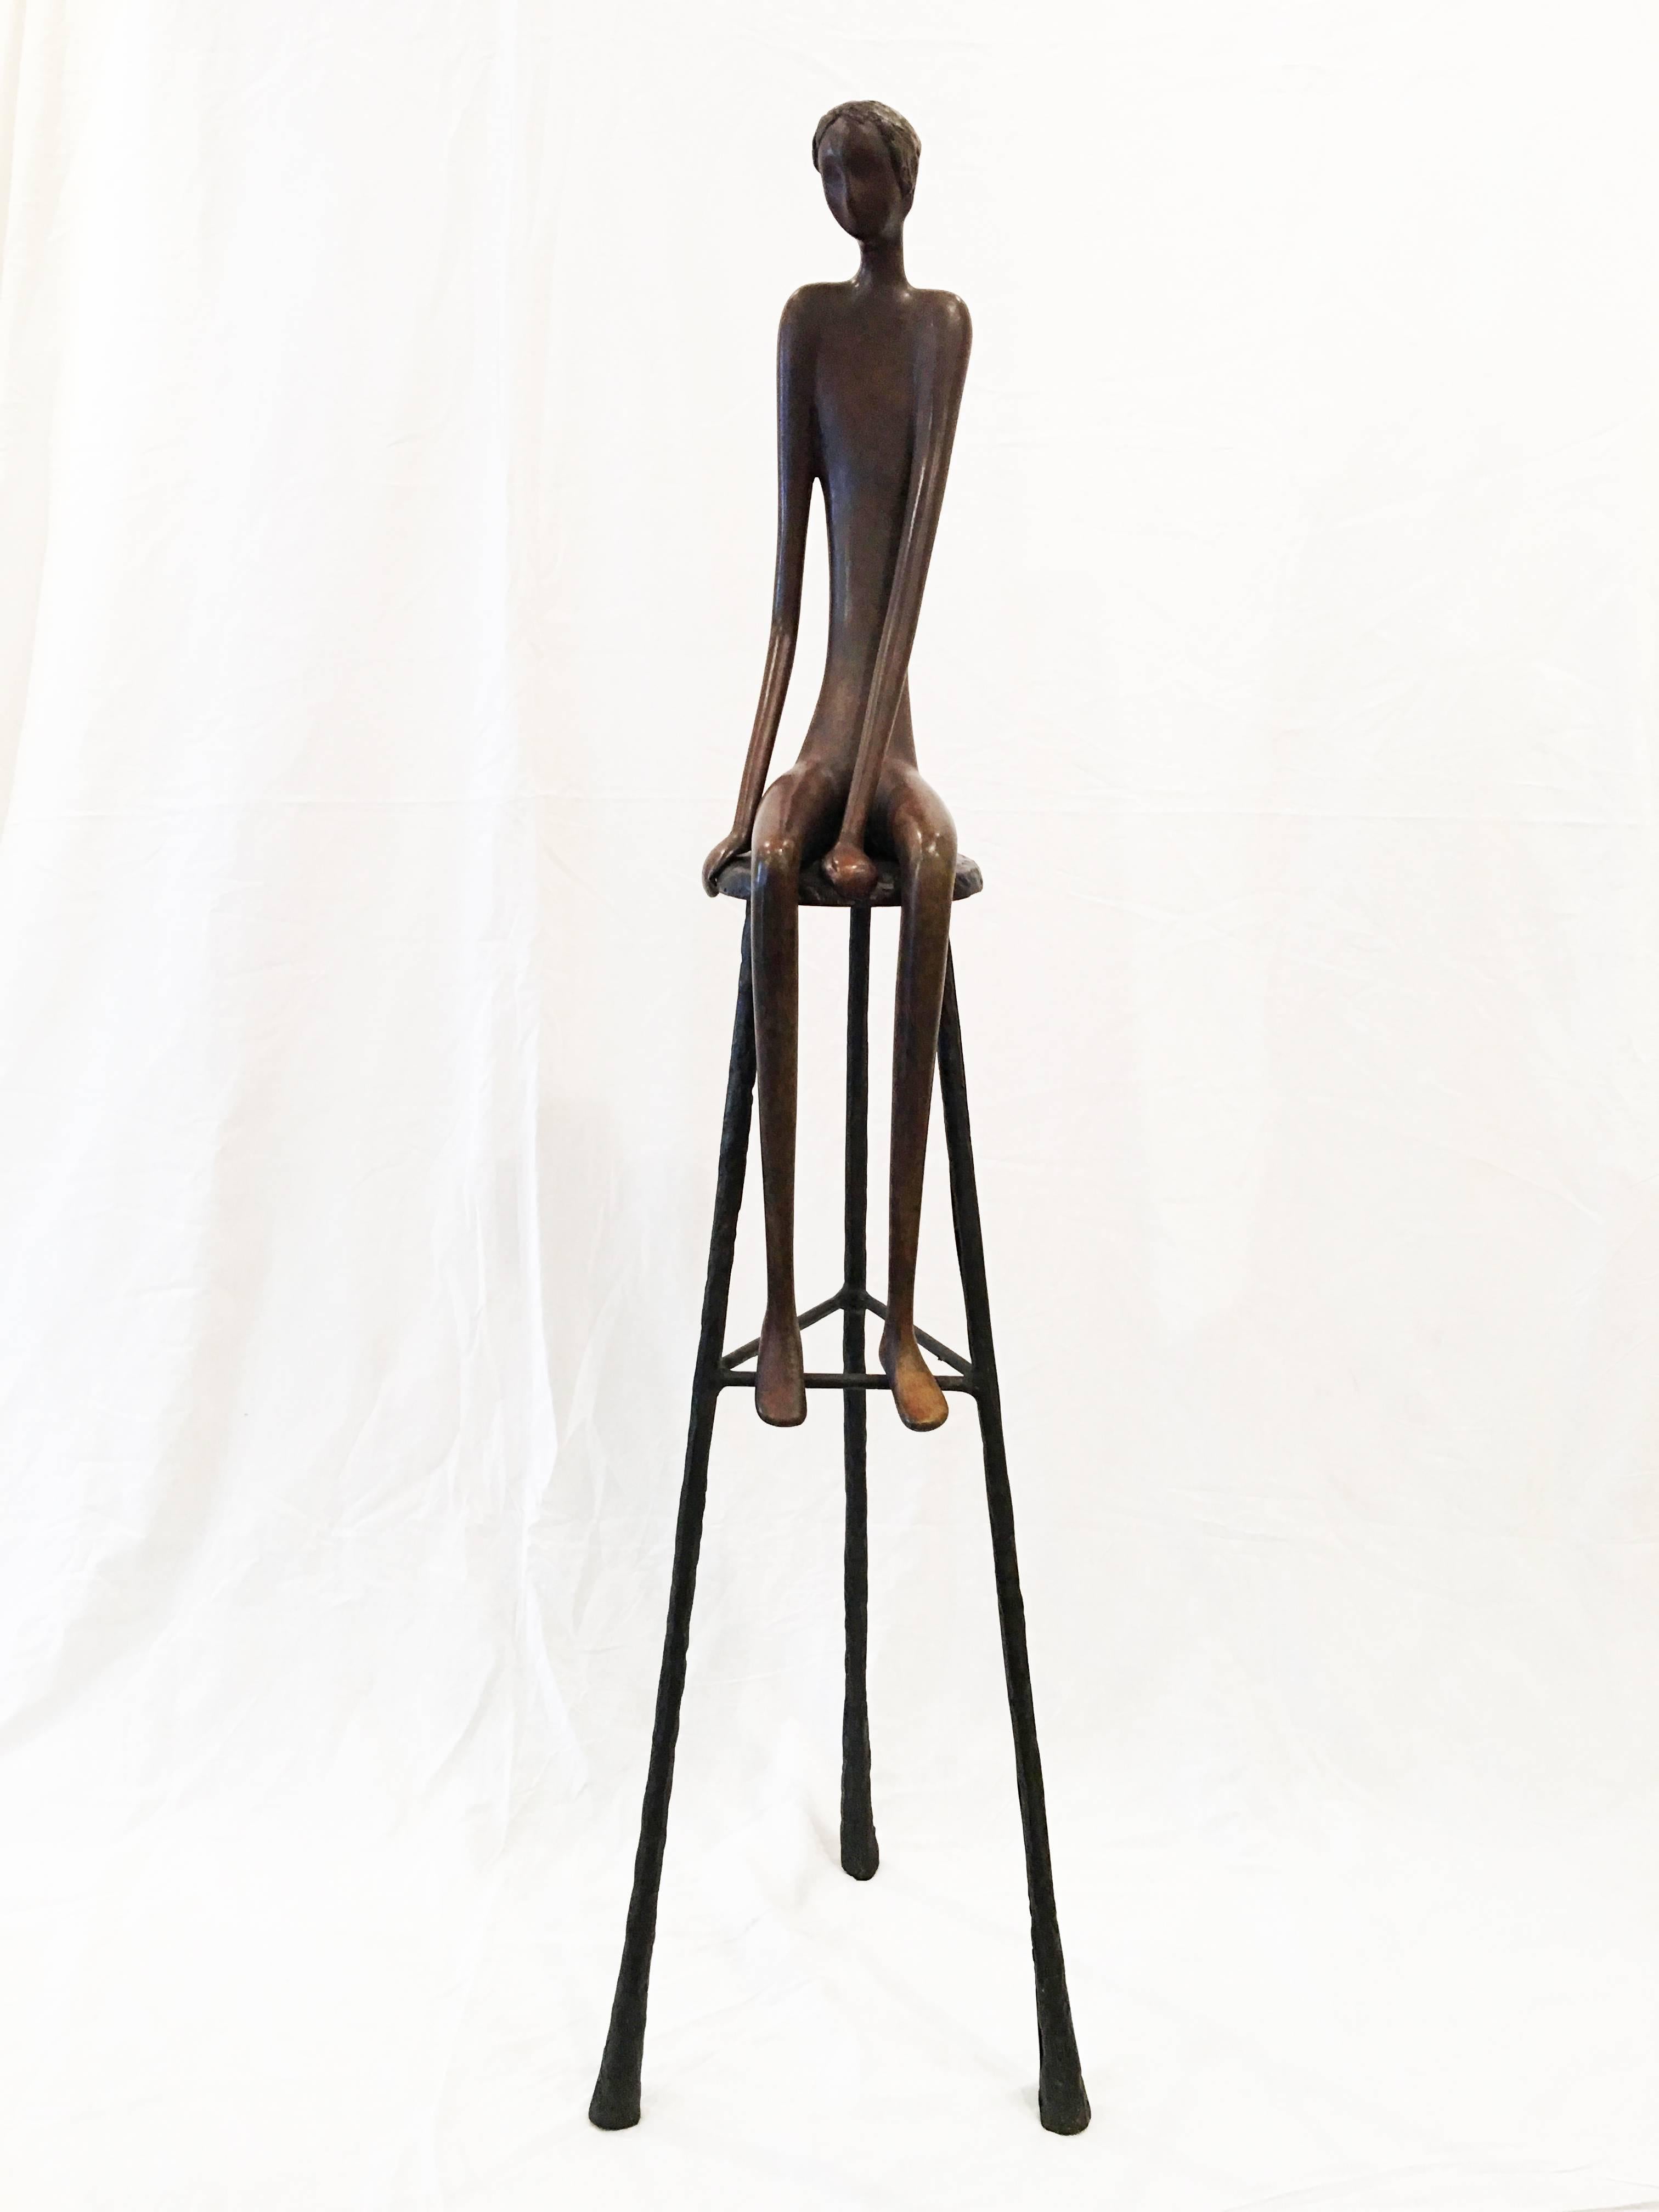 Ruth Bloch Figurative Sculpture – Mann auf Hocker, Bronzeskulptur – Auflage 7 von 25 Stück